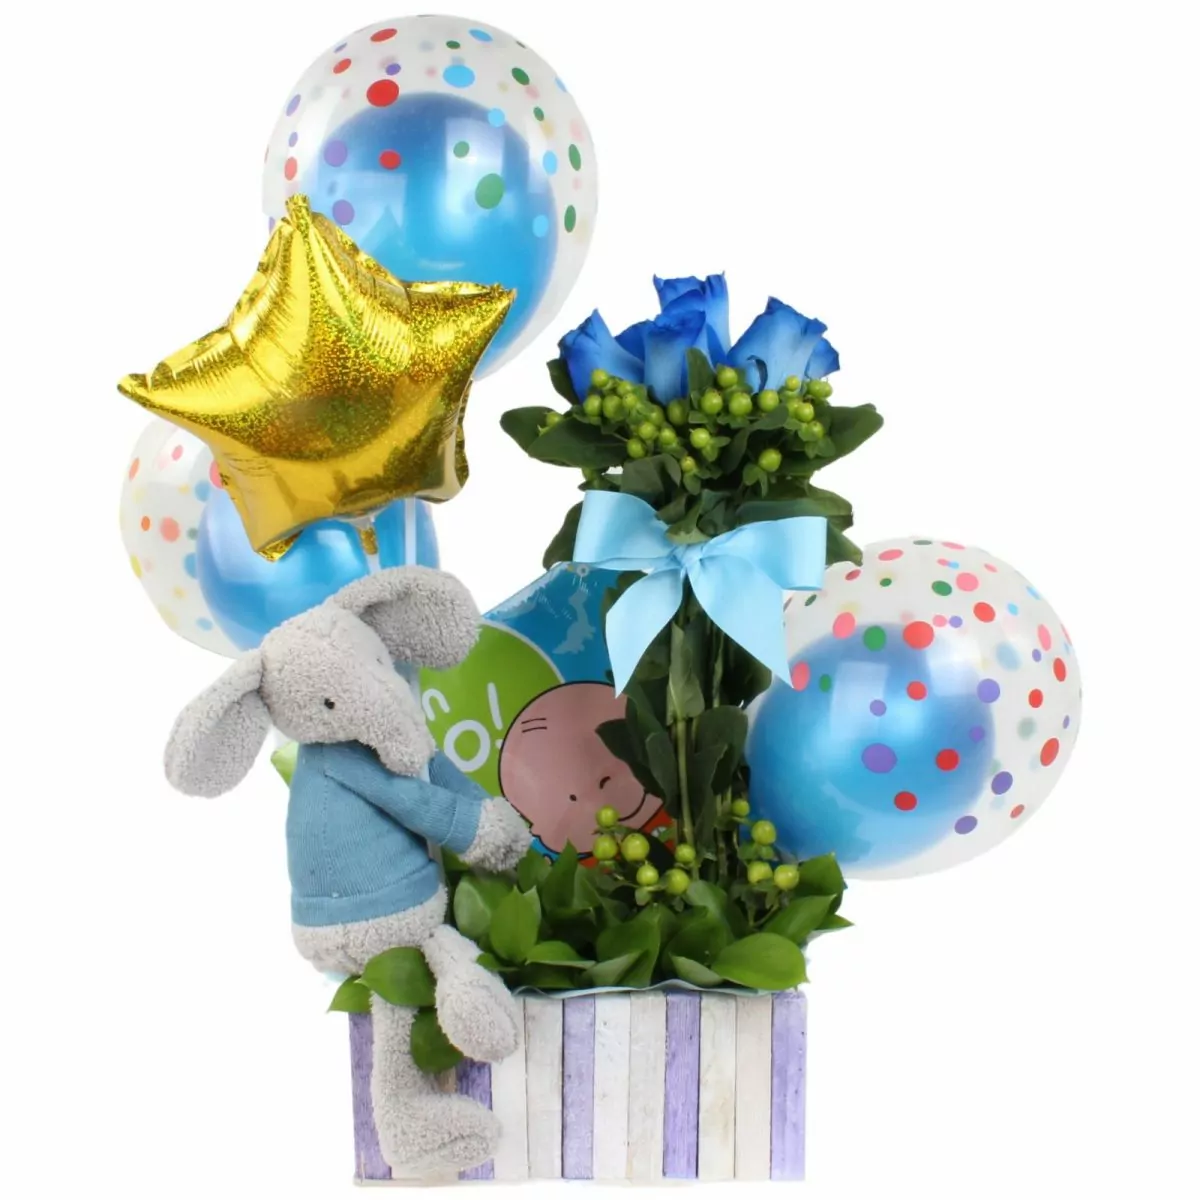 Foto principal Sorpresa para bebé Azul - Arreglo floral con peluche, libro, globos y rosas en tonos celestes y azules